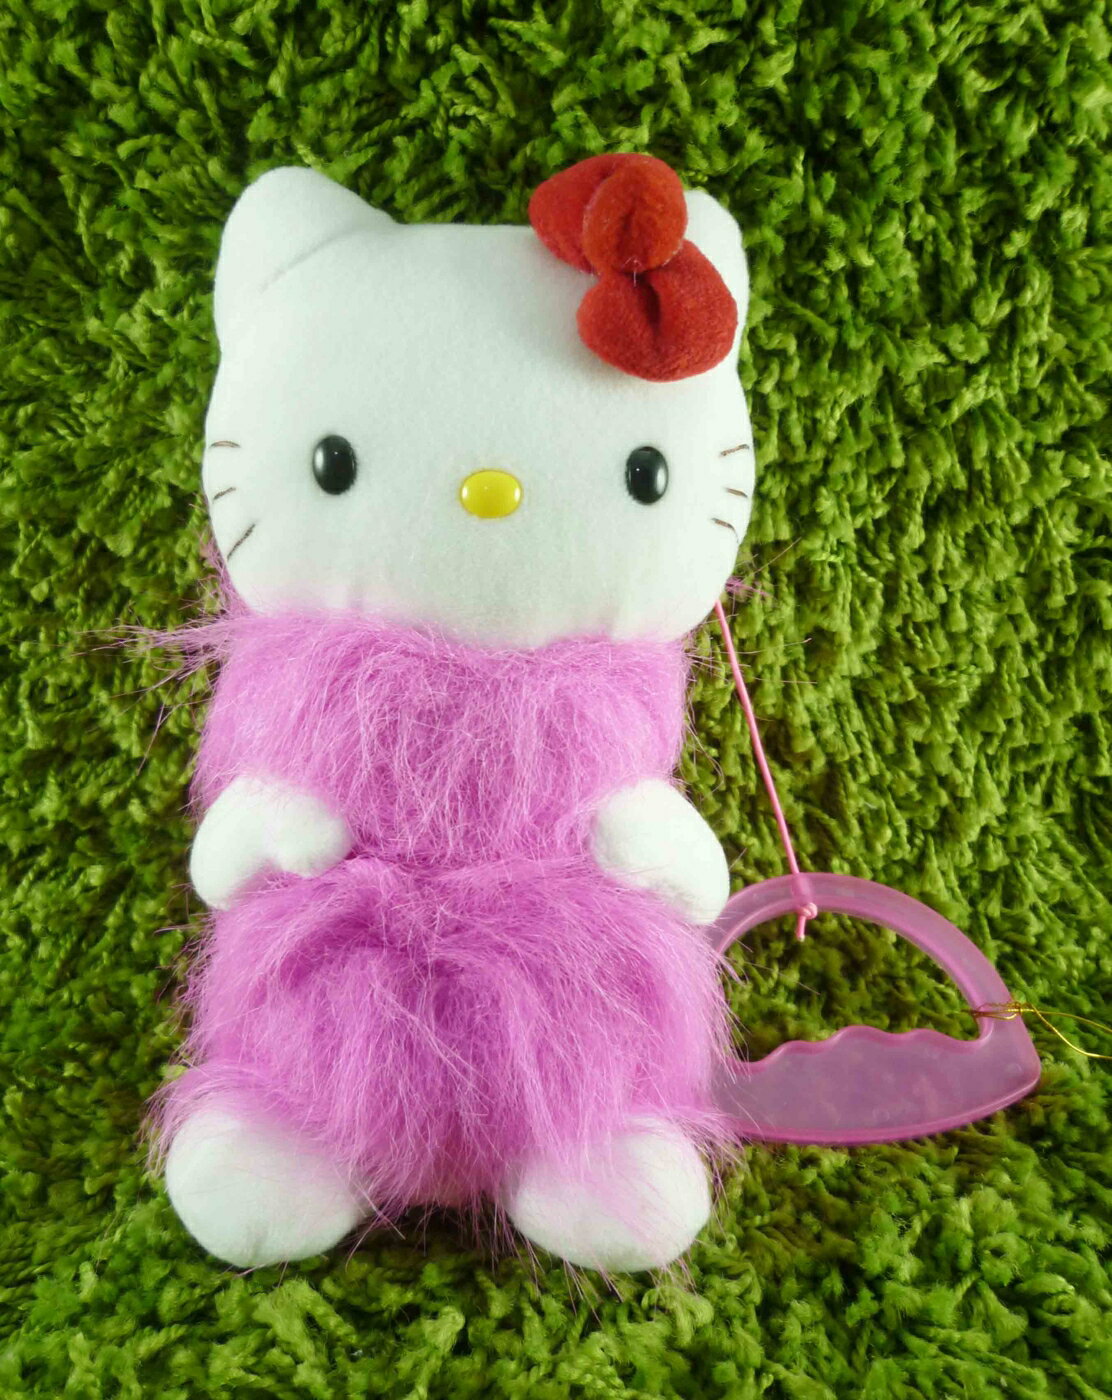 【震撼精品百貨】Hello Kitty 凱蒂貓 KITTY絨毛娃娃-有聲娃娃-粉毛 震撼日式精品百貨